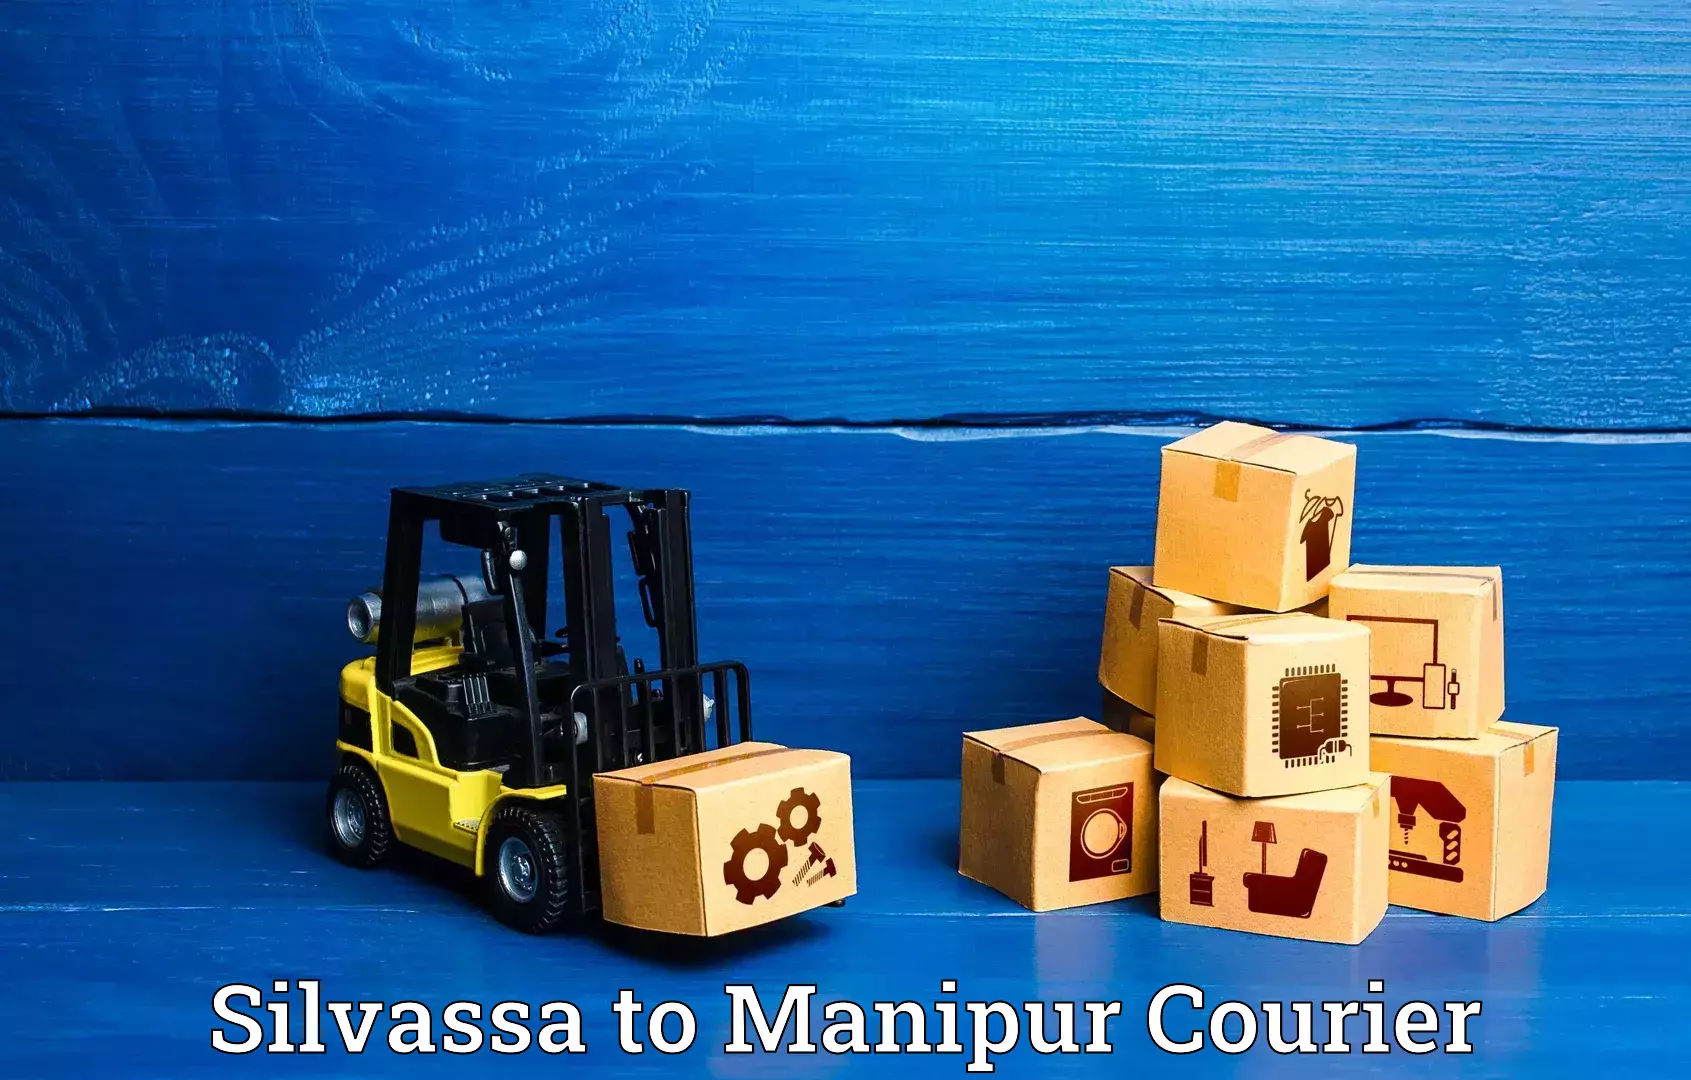 Baggage transport innovation Silvassa to Manipur